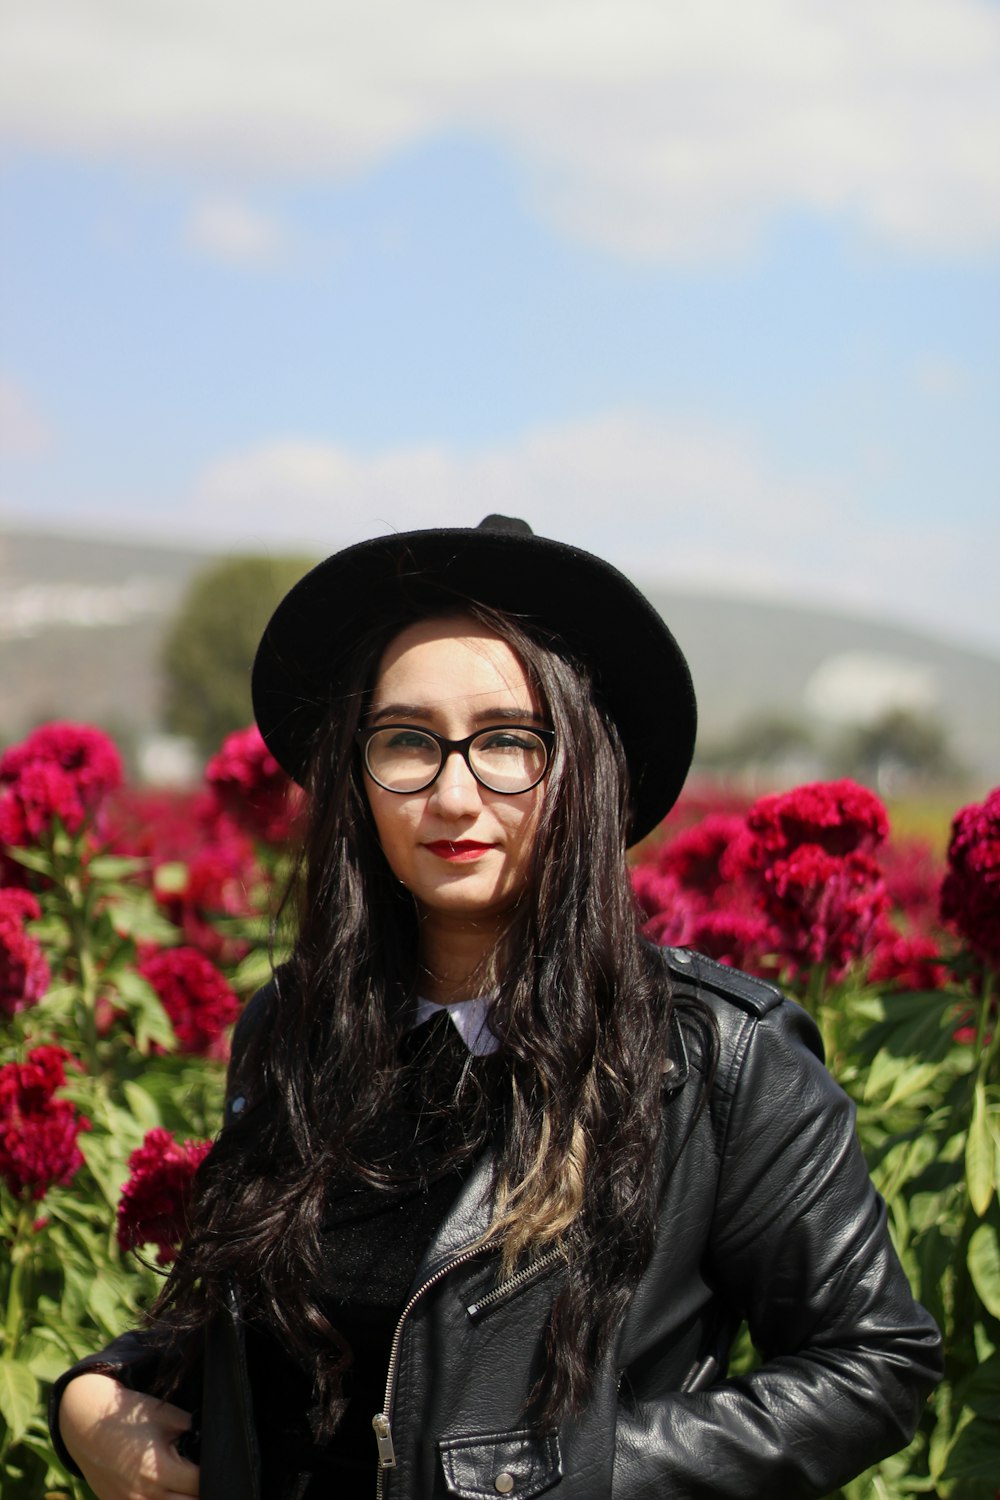 黒い帽子をかぶった黒い革ジャンを着た女性が昼間、赤い花のそばに立つ